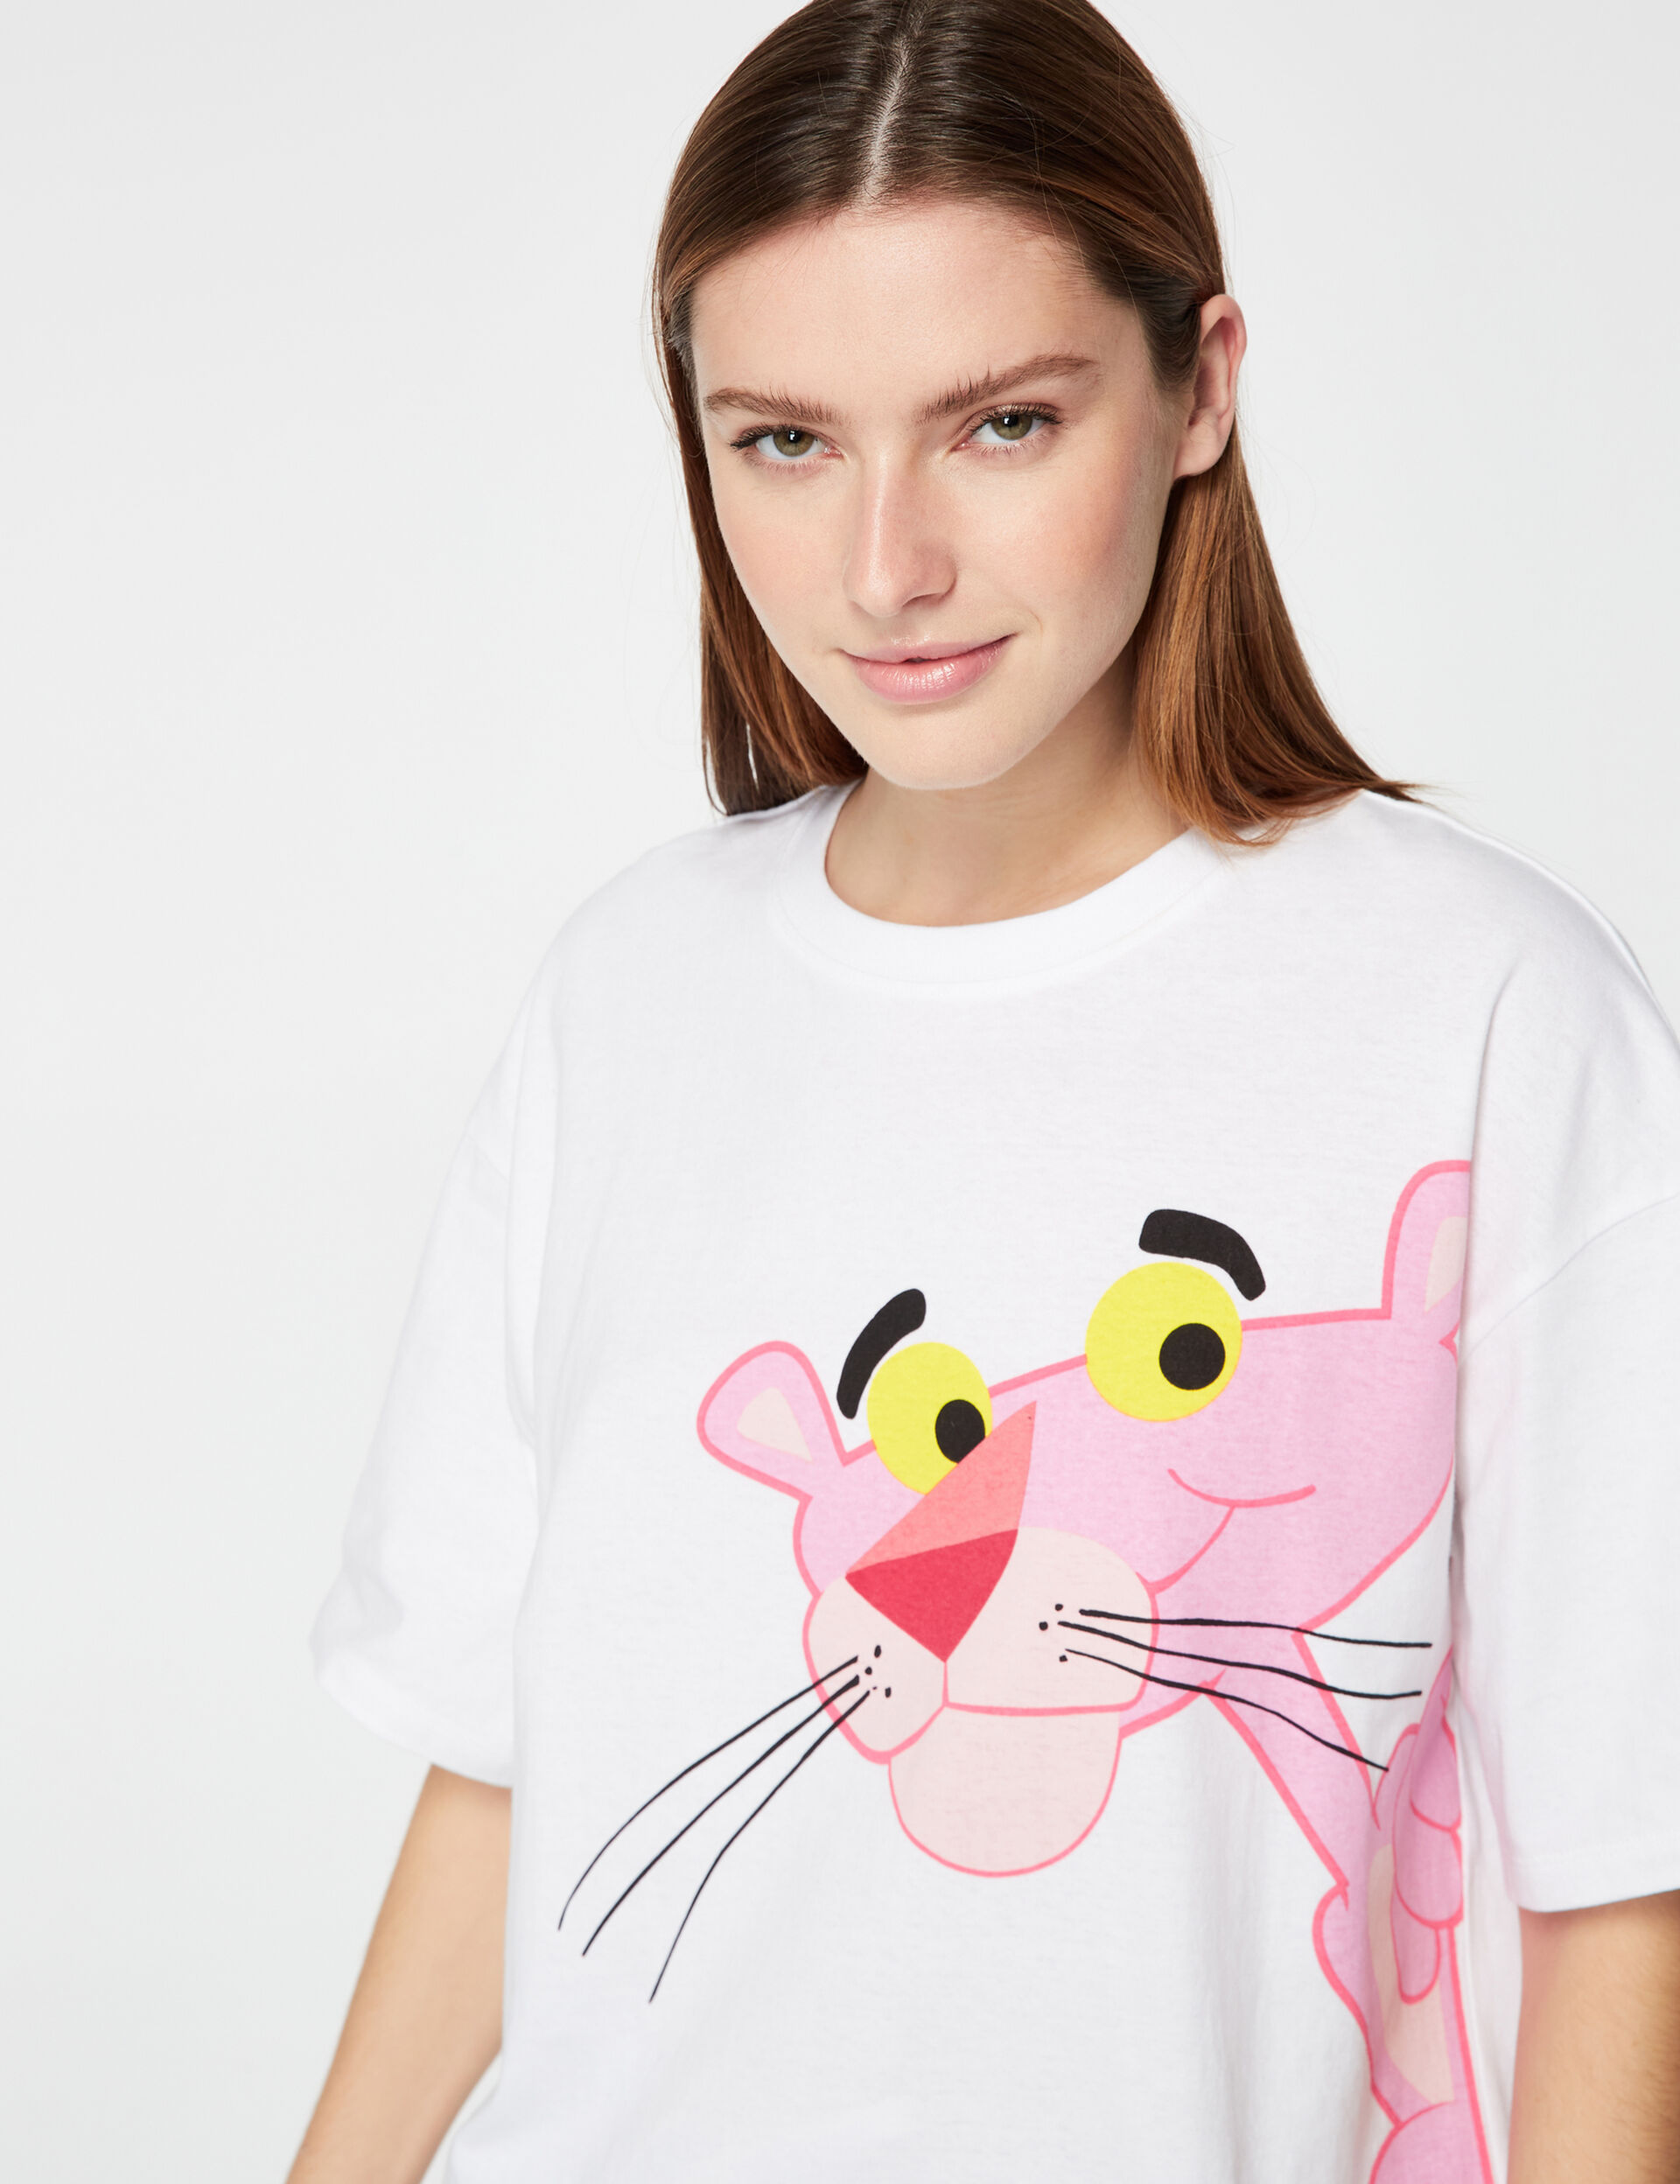 Tee-shirt Pink Panther